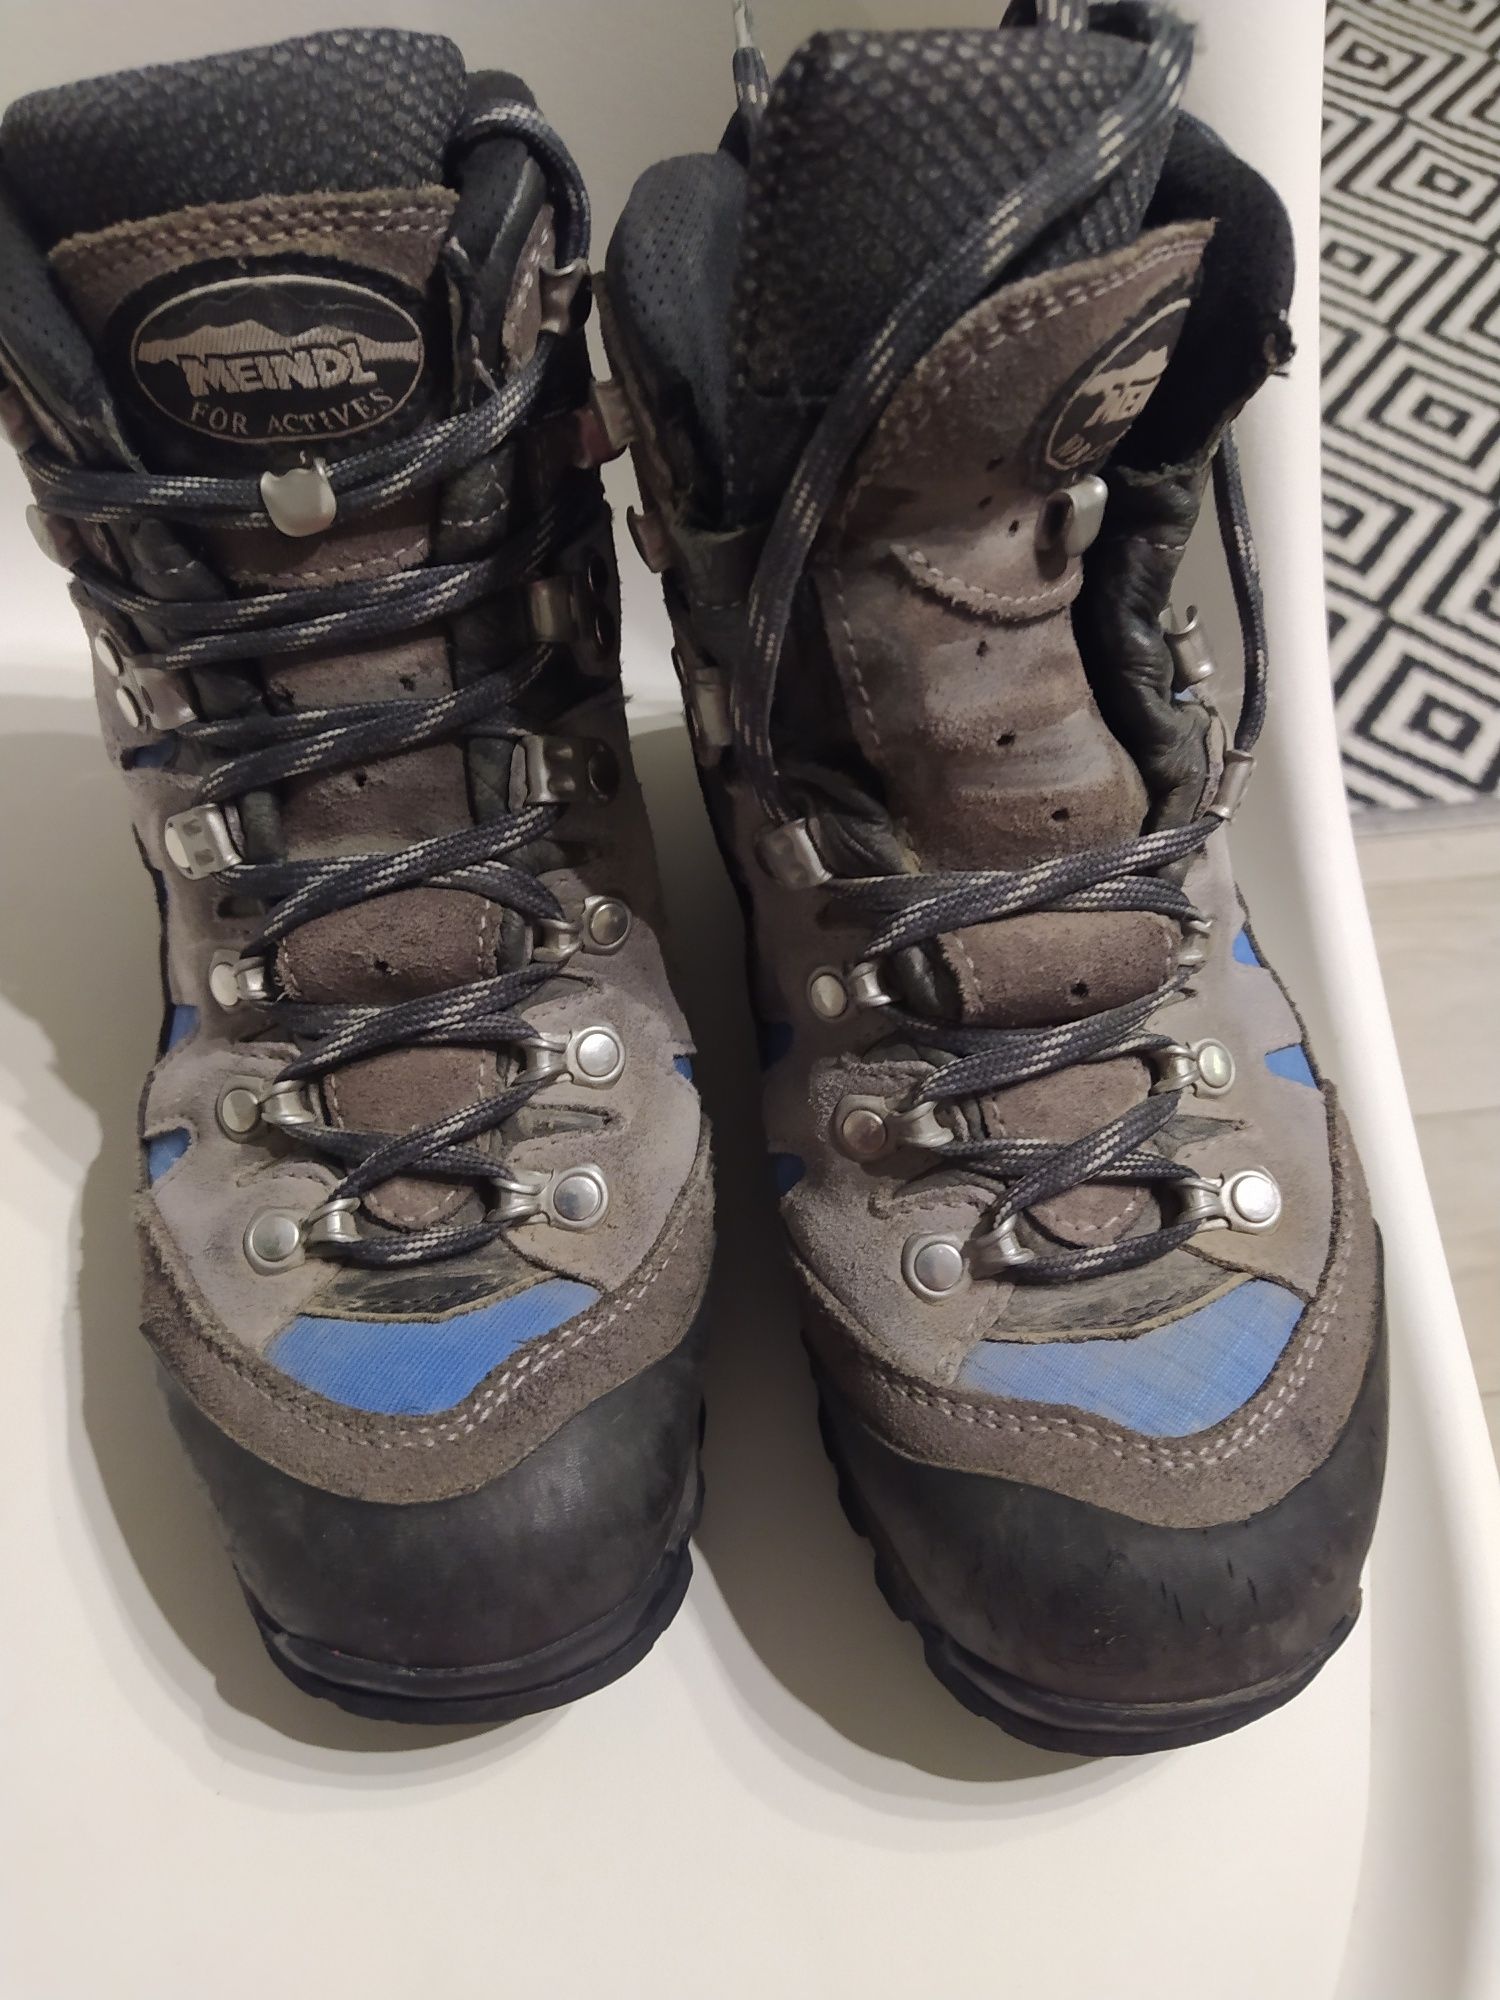 Meindl for active r 38 GTX MFS buty trekkingowe górskie